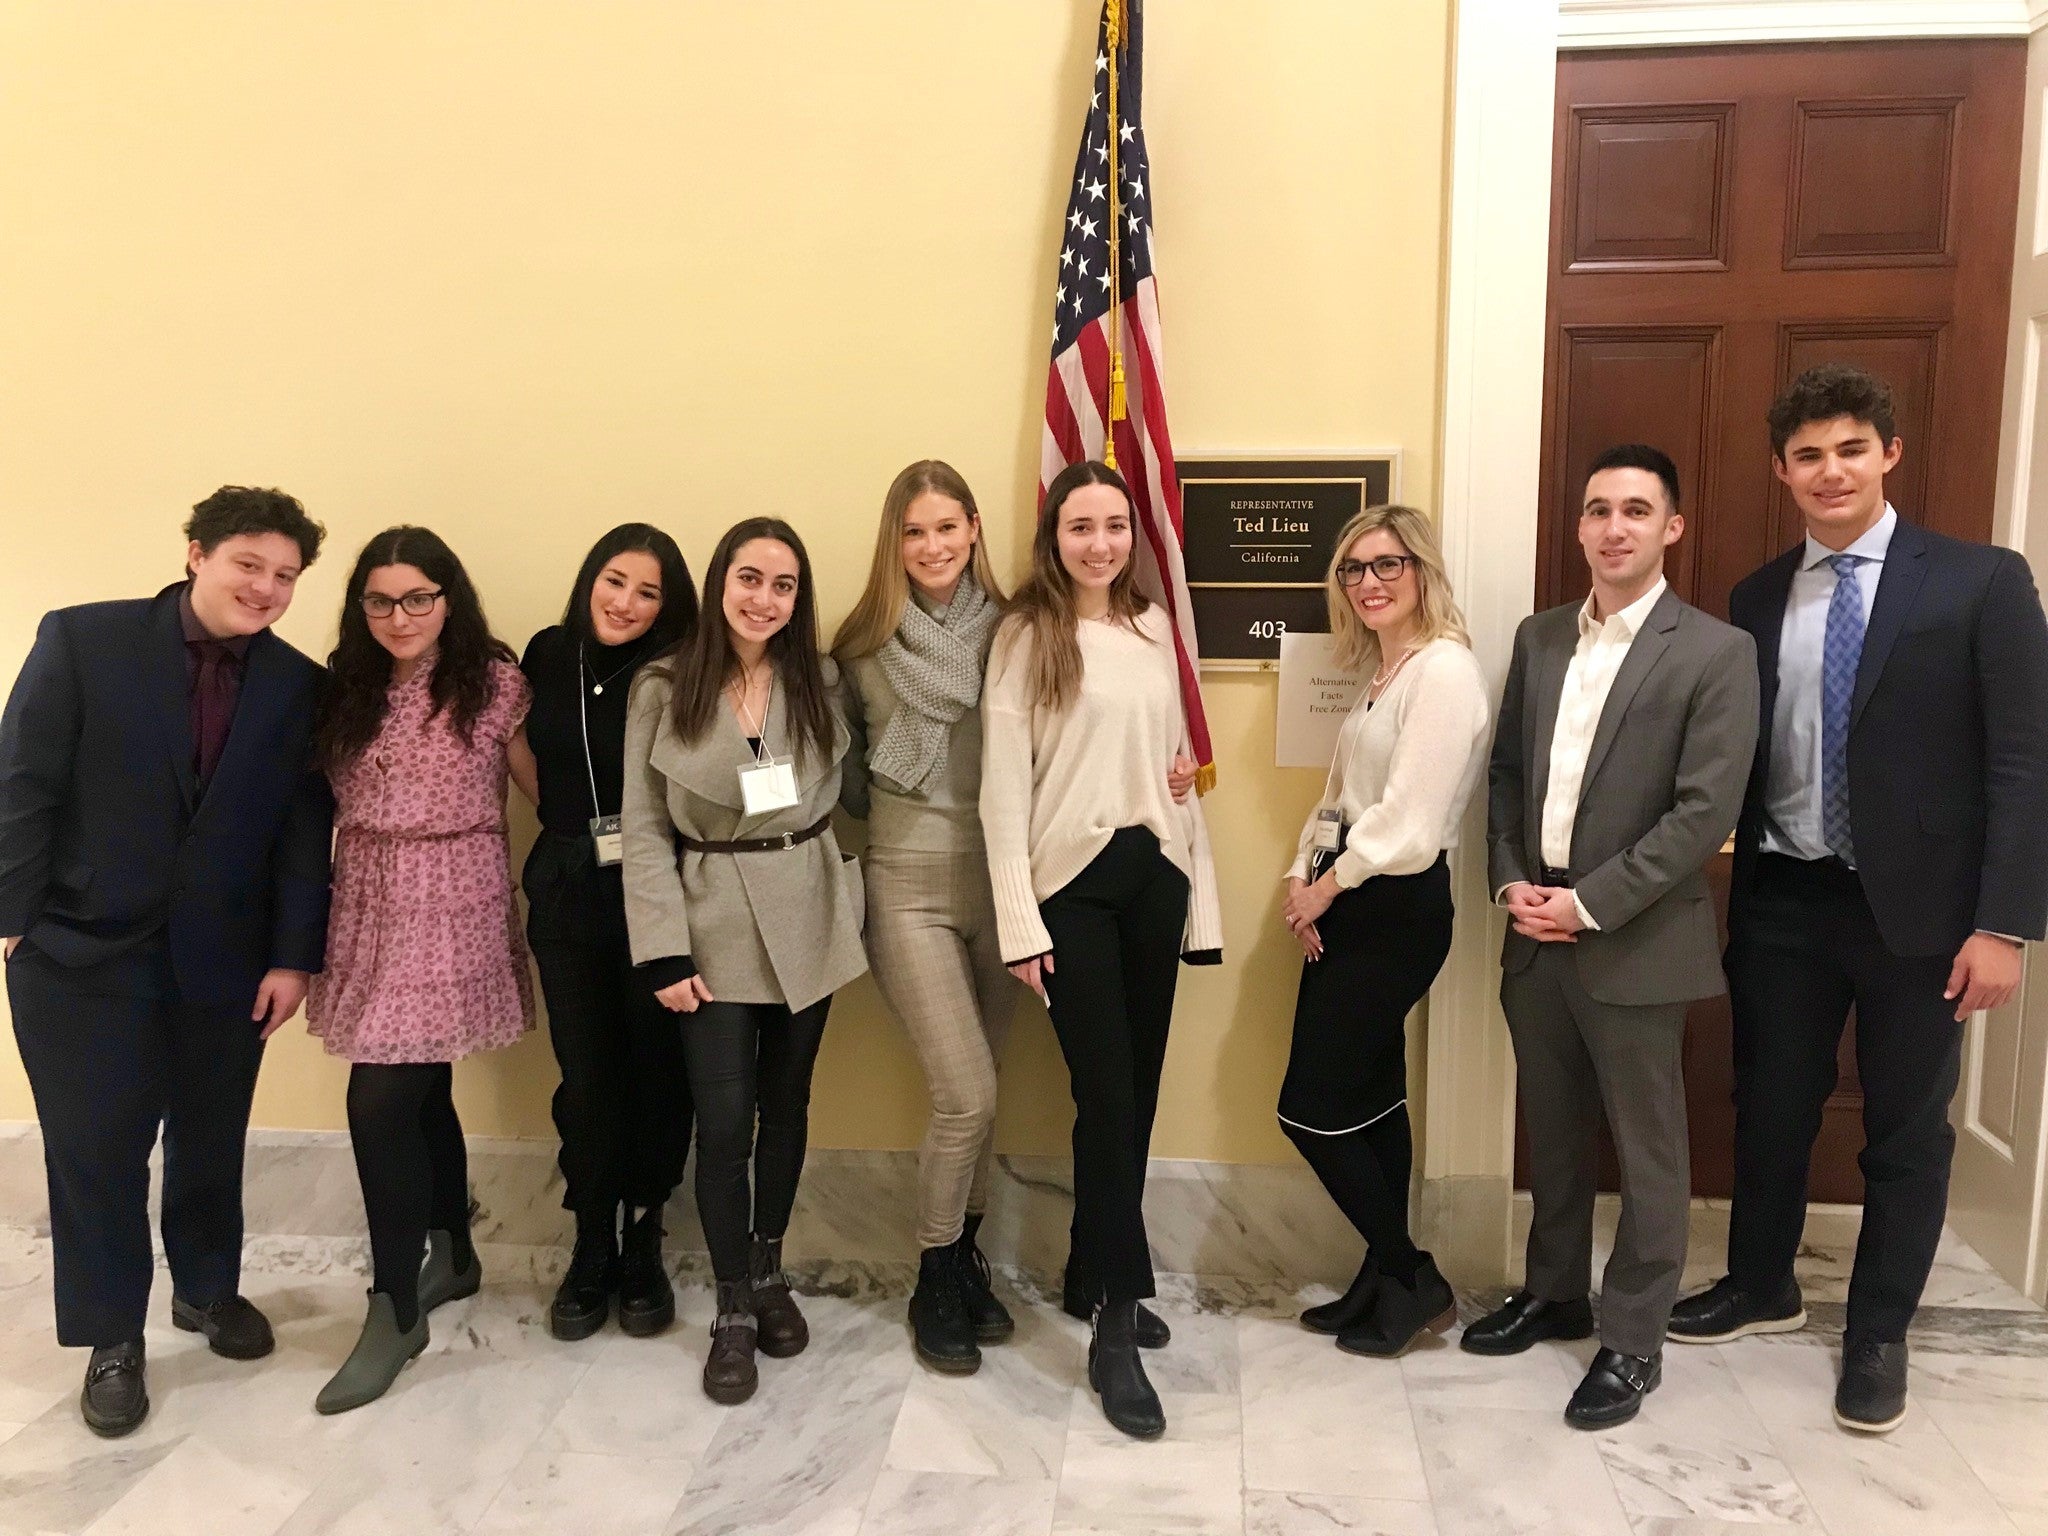 LFT 2019 - Outside Congressman Ted Lieu's Office